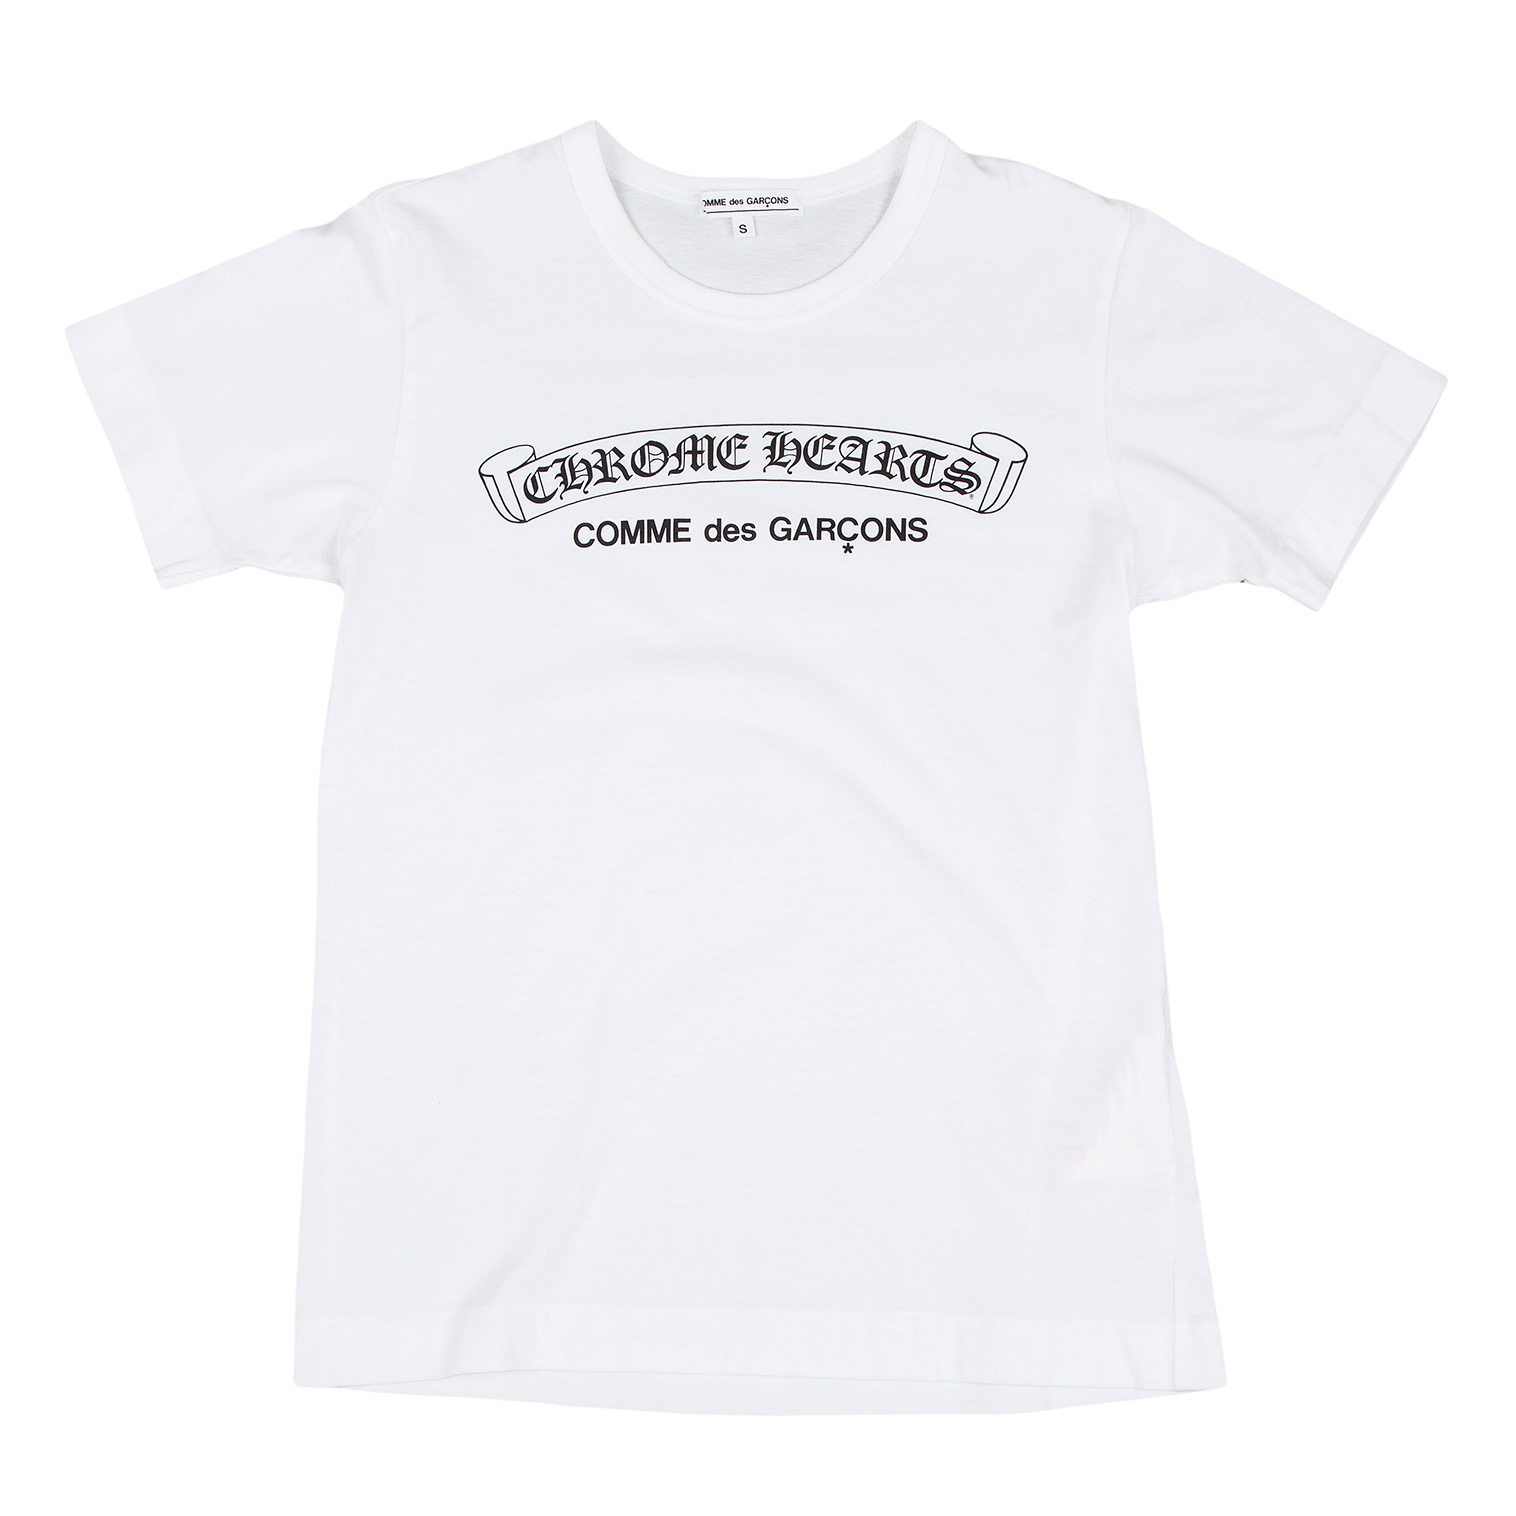 クロムハーツ×コムデギャルソン コラボ ロゴプリントTシャツ ブラック着丈57cm